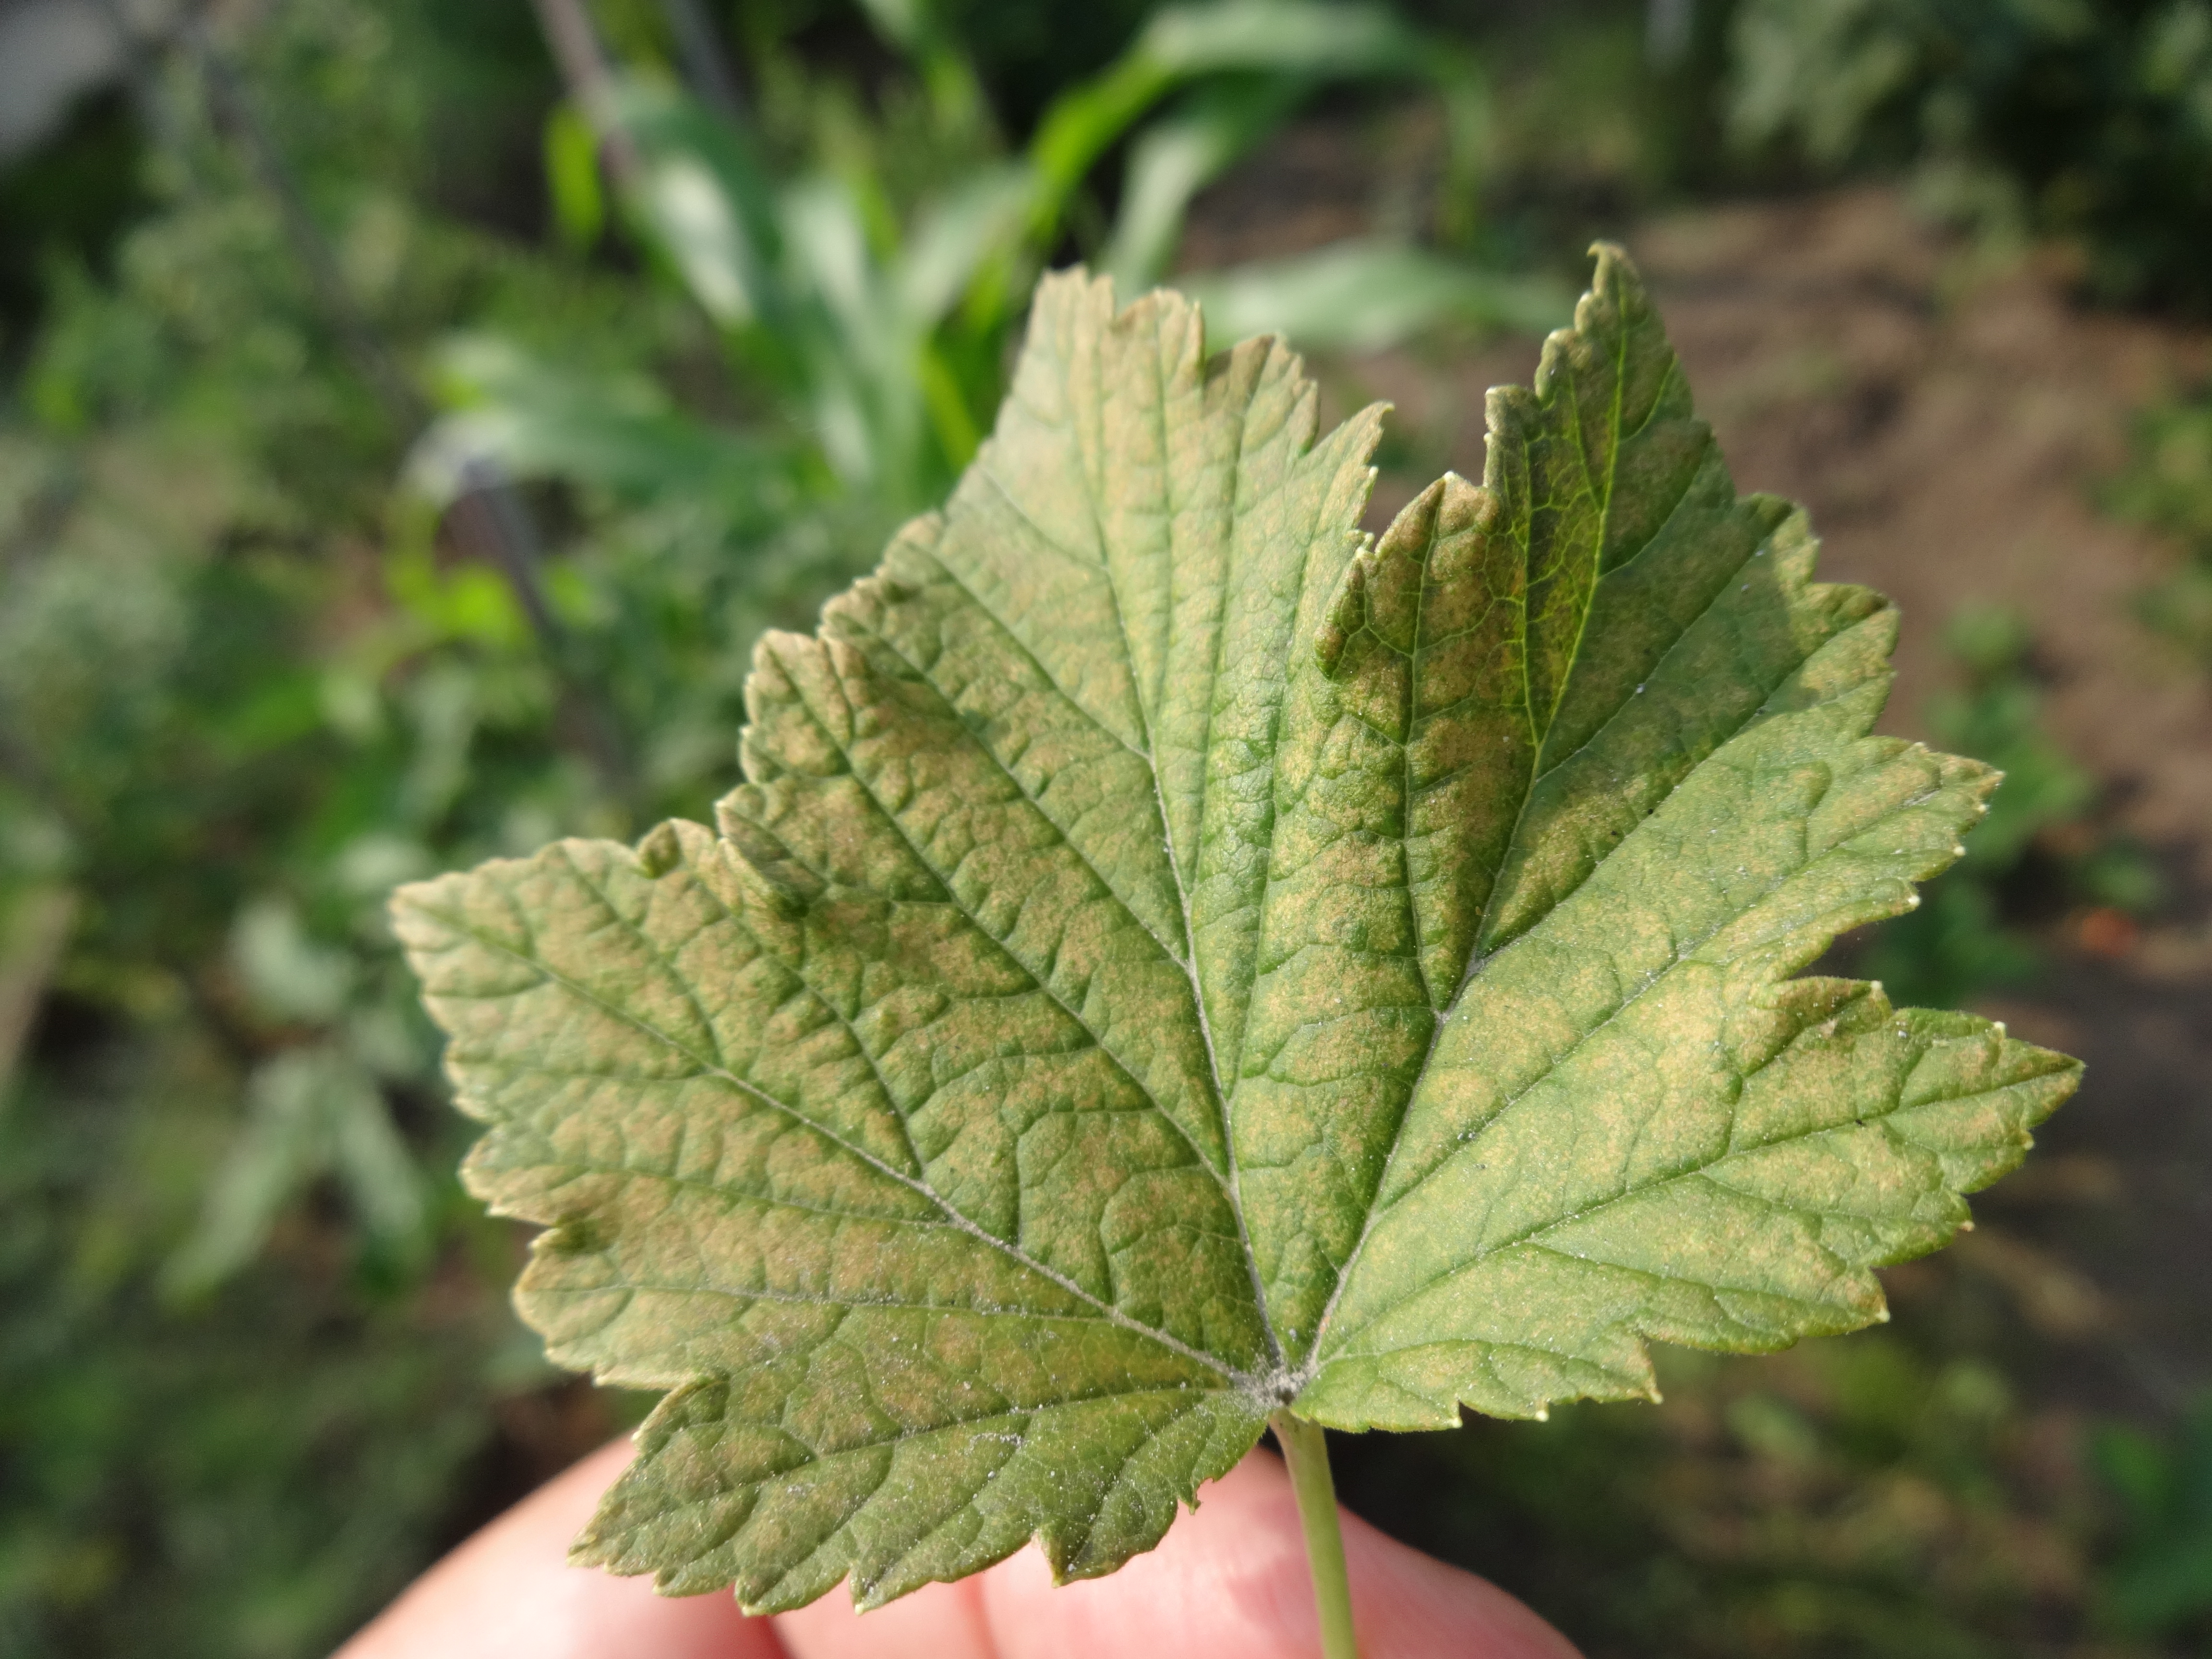 Что с листьями у чёрной смородины? — Вопросы и ответы на Ferma.expert